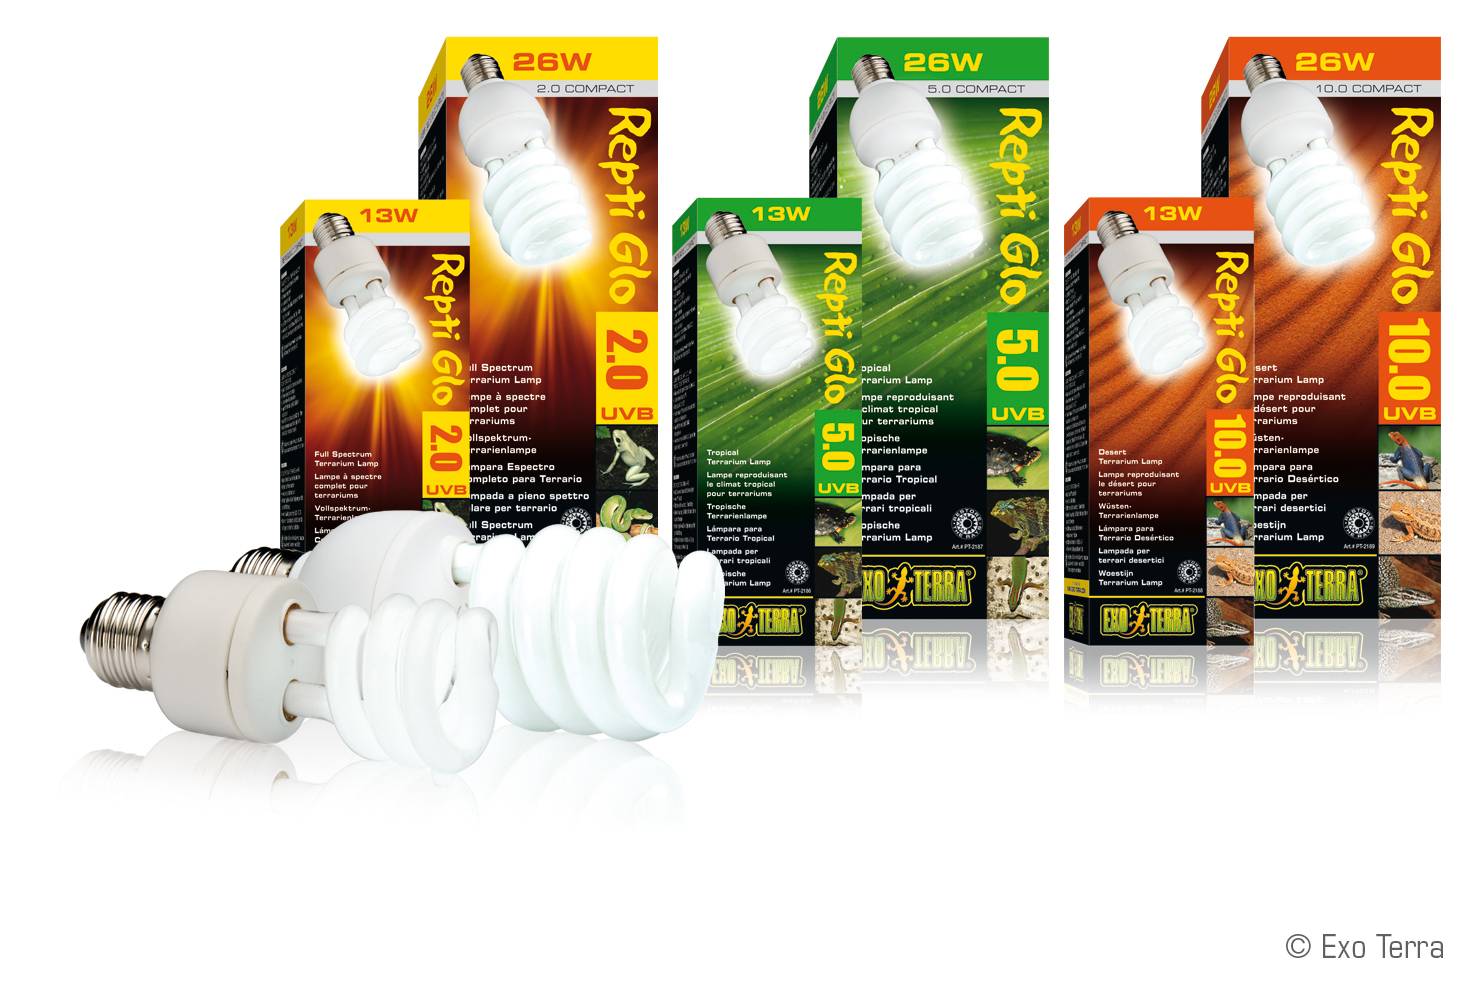 Ультрафиолетовые лампы для черепах: выбор, инструкция по эксплуатации. нужна ли черепахе ультрафиолетовая лампа :: syl.ru